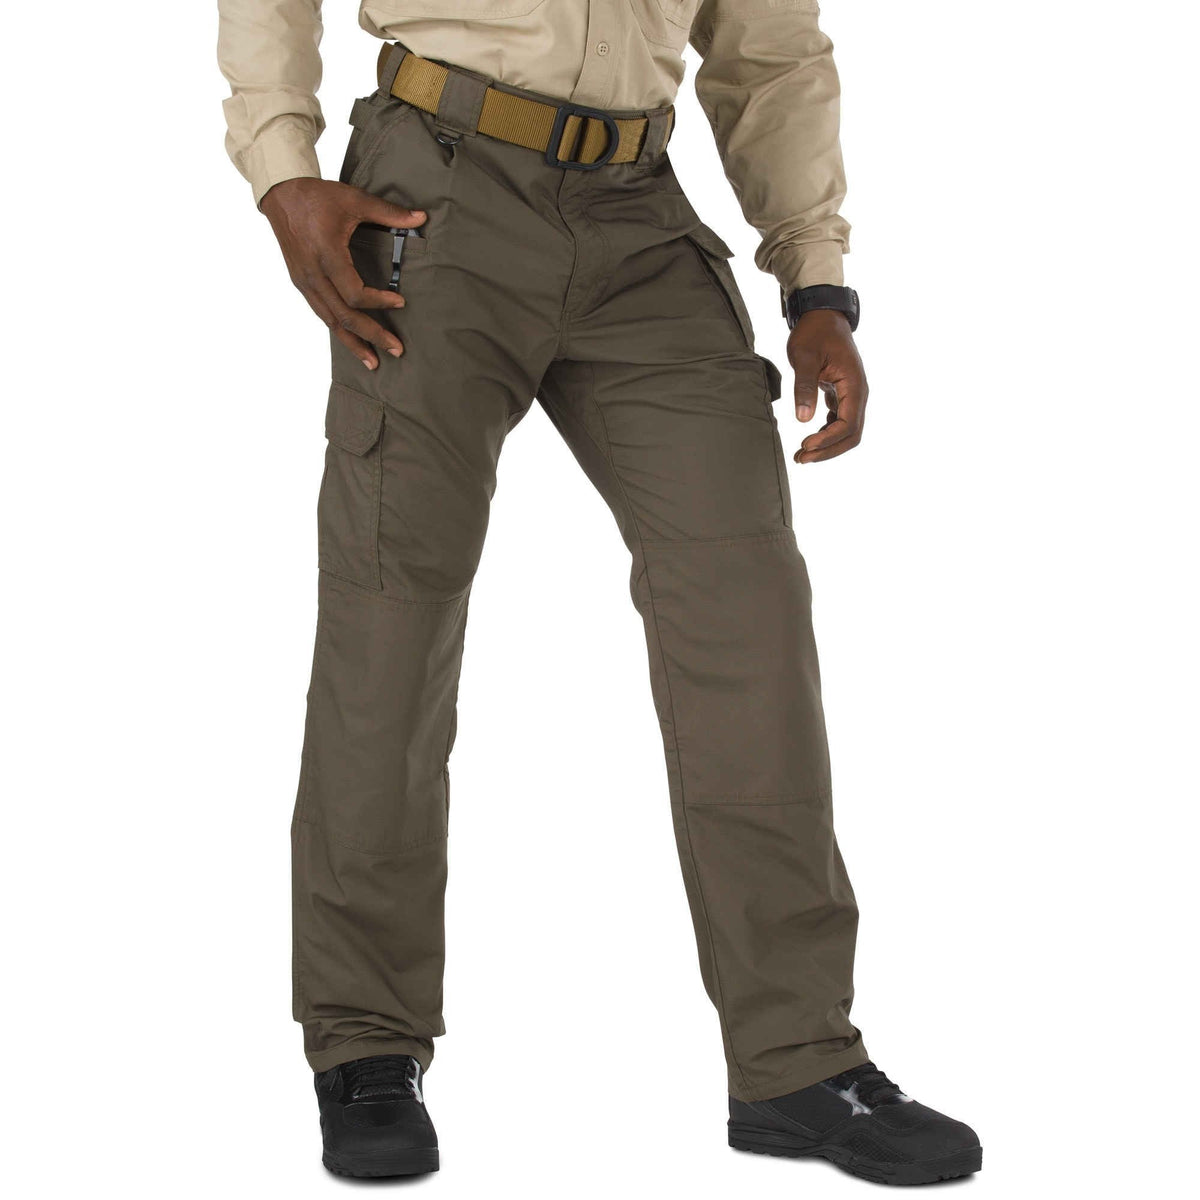 5.11 Tactical Taclite Pro Pants - Tundra Pants 5.11 Tactical 28 30 Tactical Gear Supplier Tactical Distributors Australia